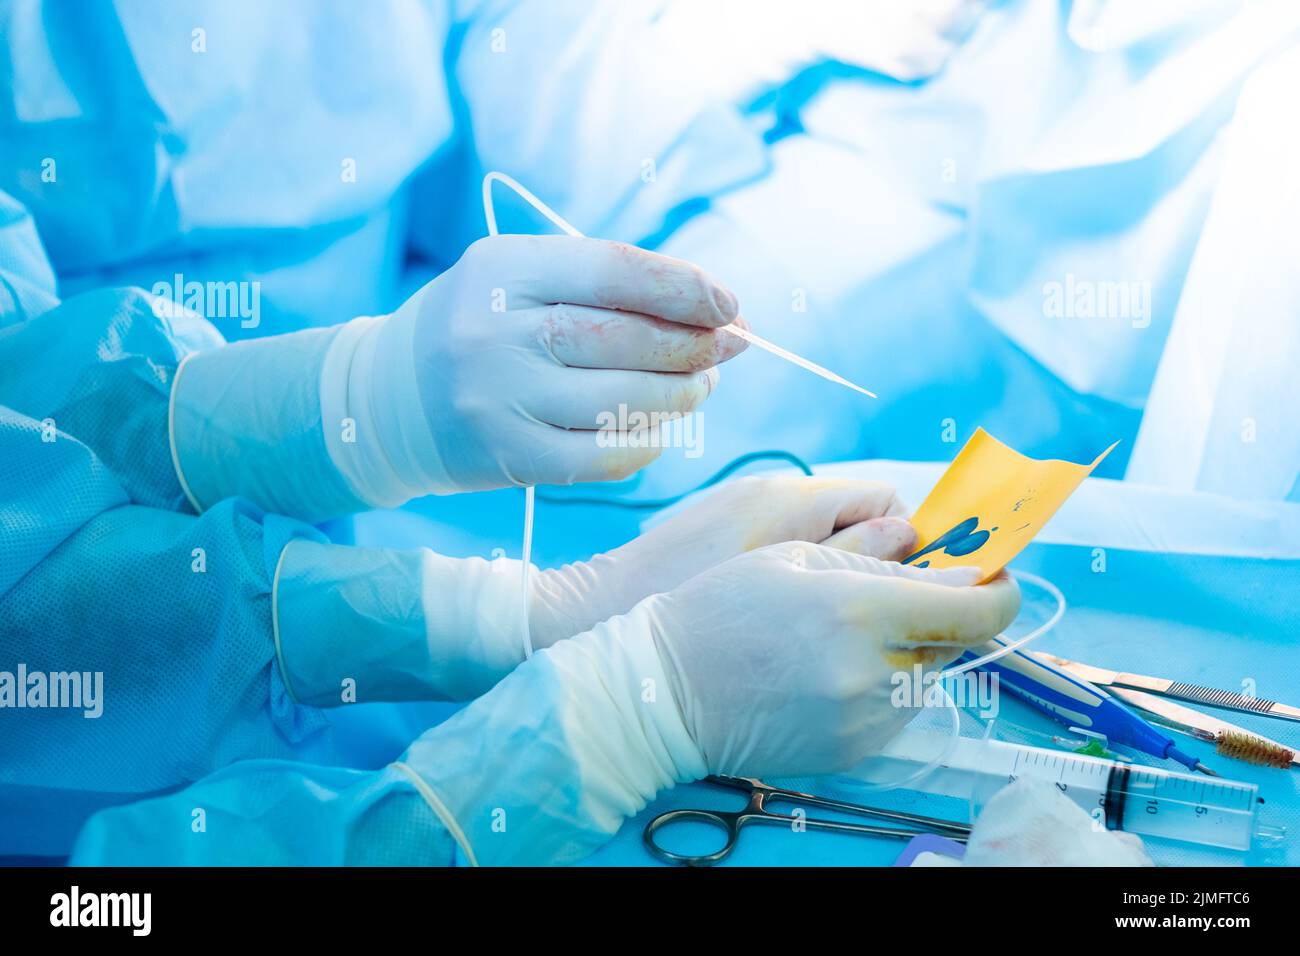 La mano del chirurgo in un guanto sterile contiene un erogatore di colla di fibrina. Foto Stock